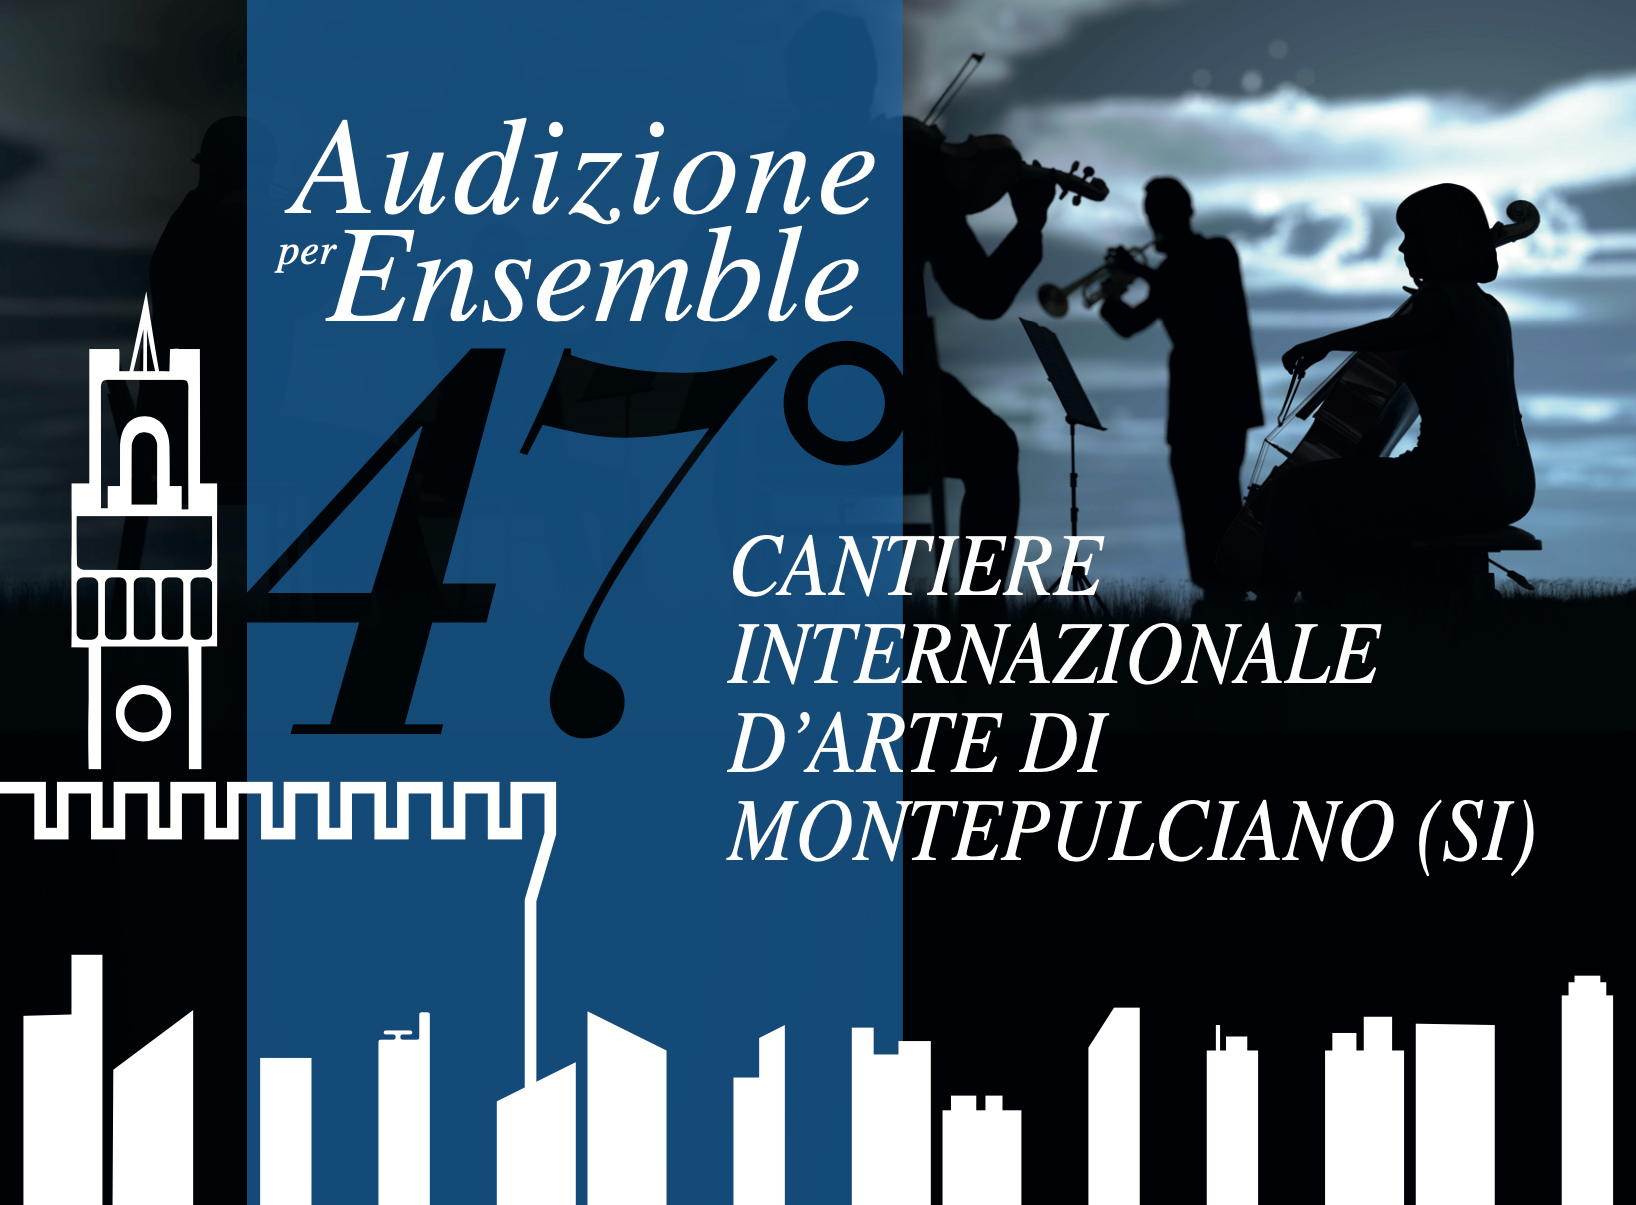 Audizione per ensemble strumentali organizzata dall'Associazione 50&Più Arezzo